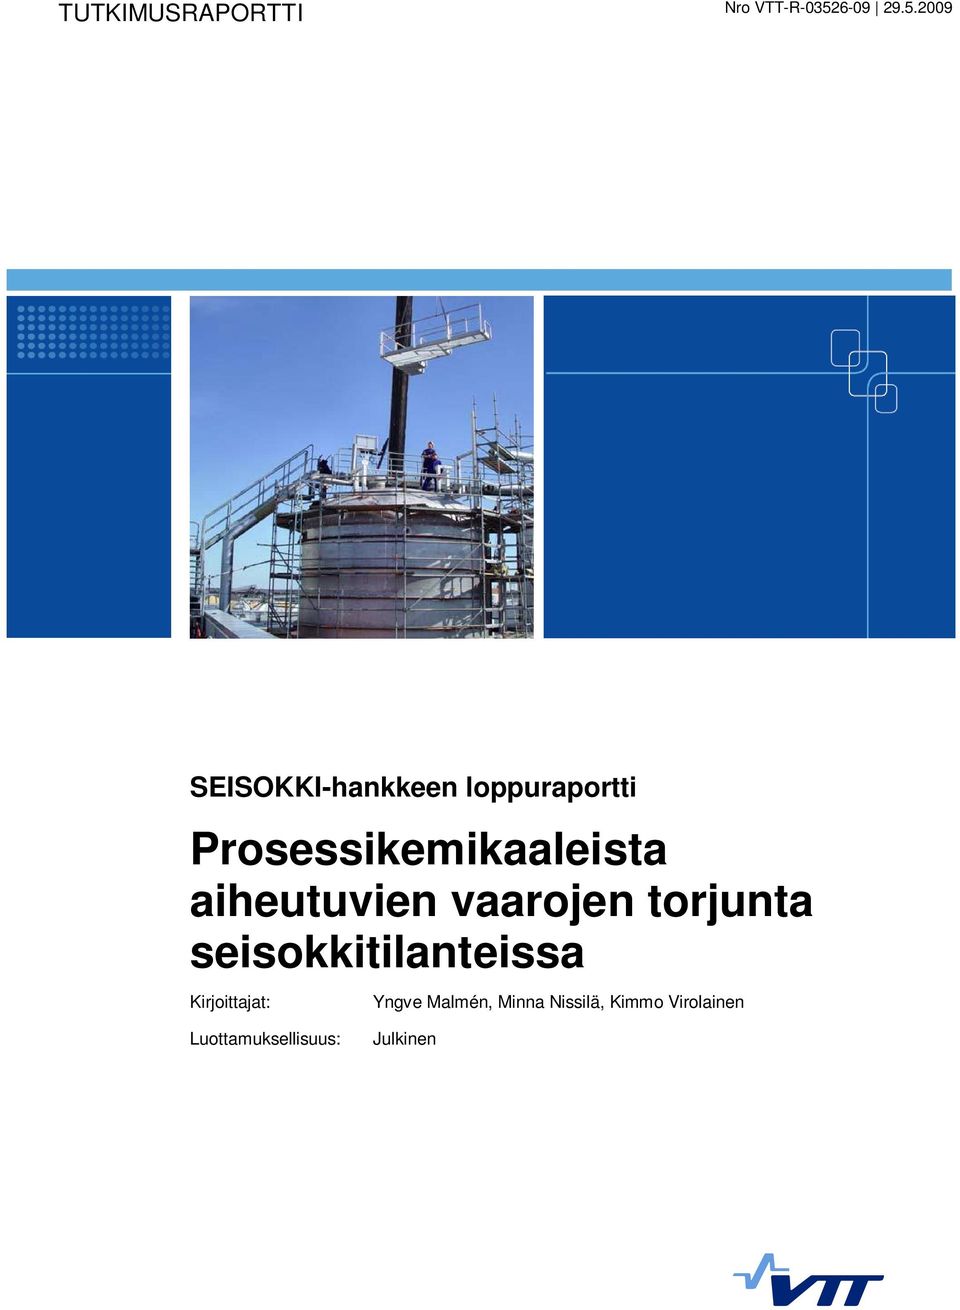 2009 SEISOKKI-hankkeen loppuraportti Prosessikemikaaleista